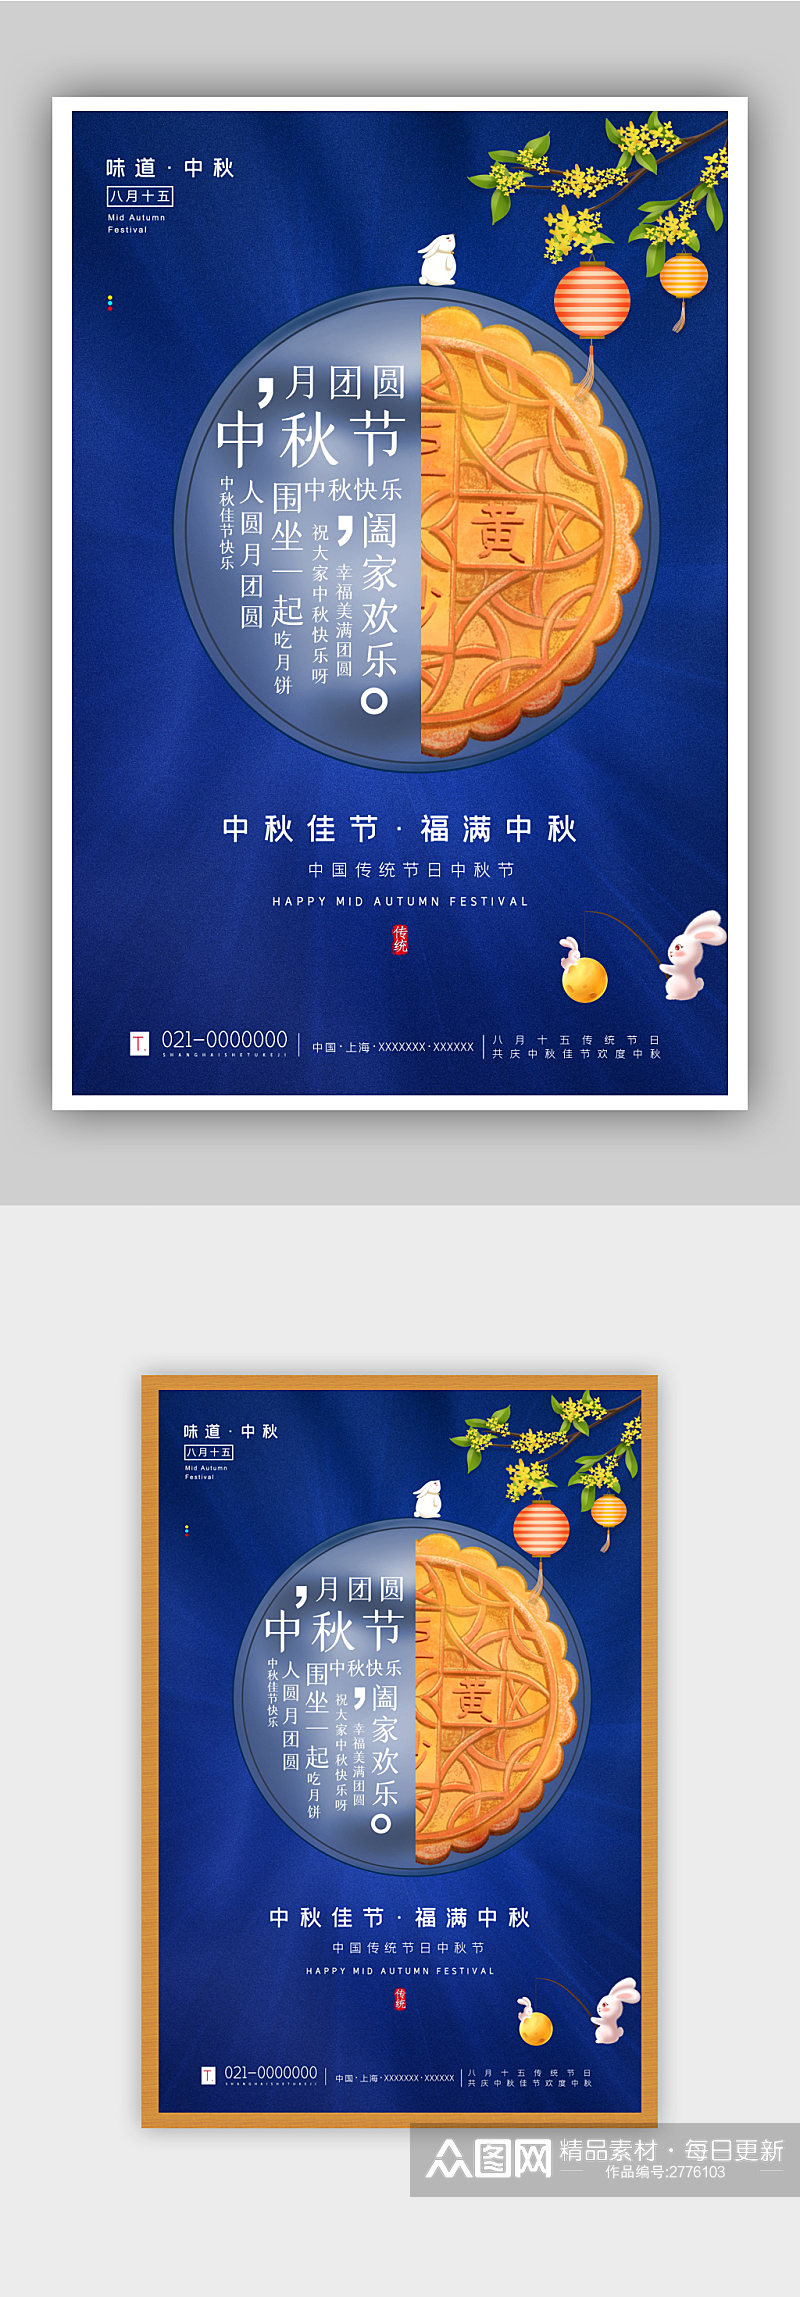 蓝色中国风中秋节节日海报素材